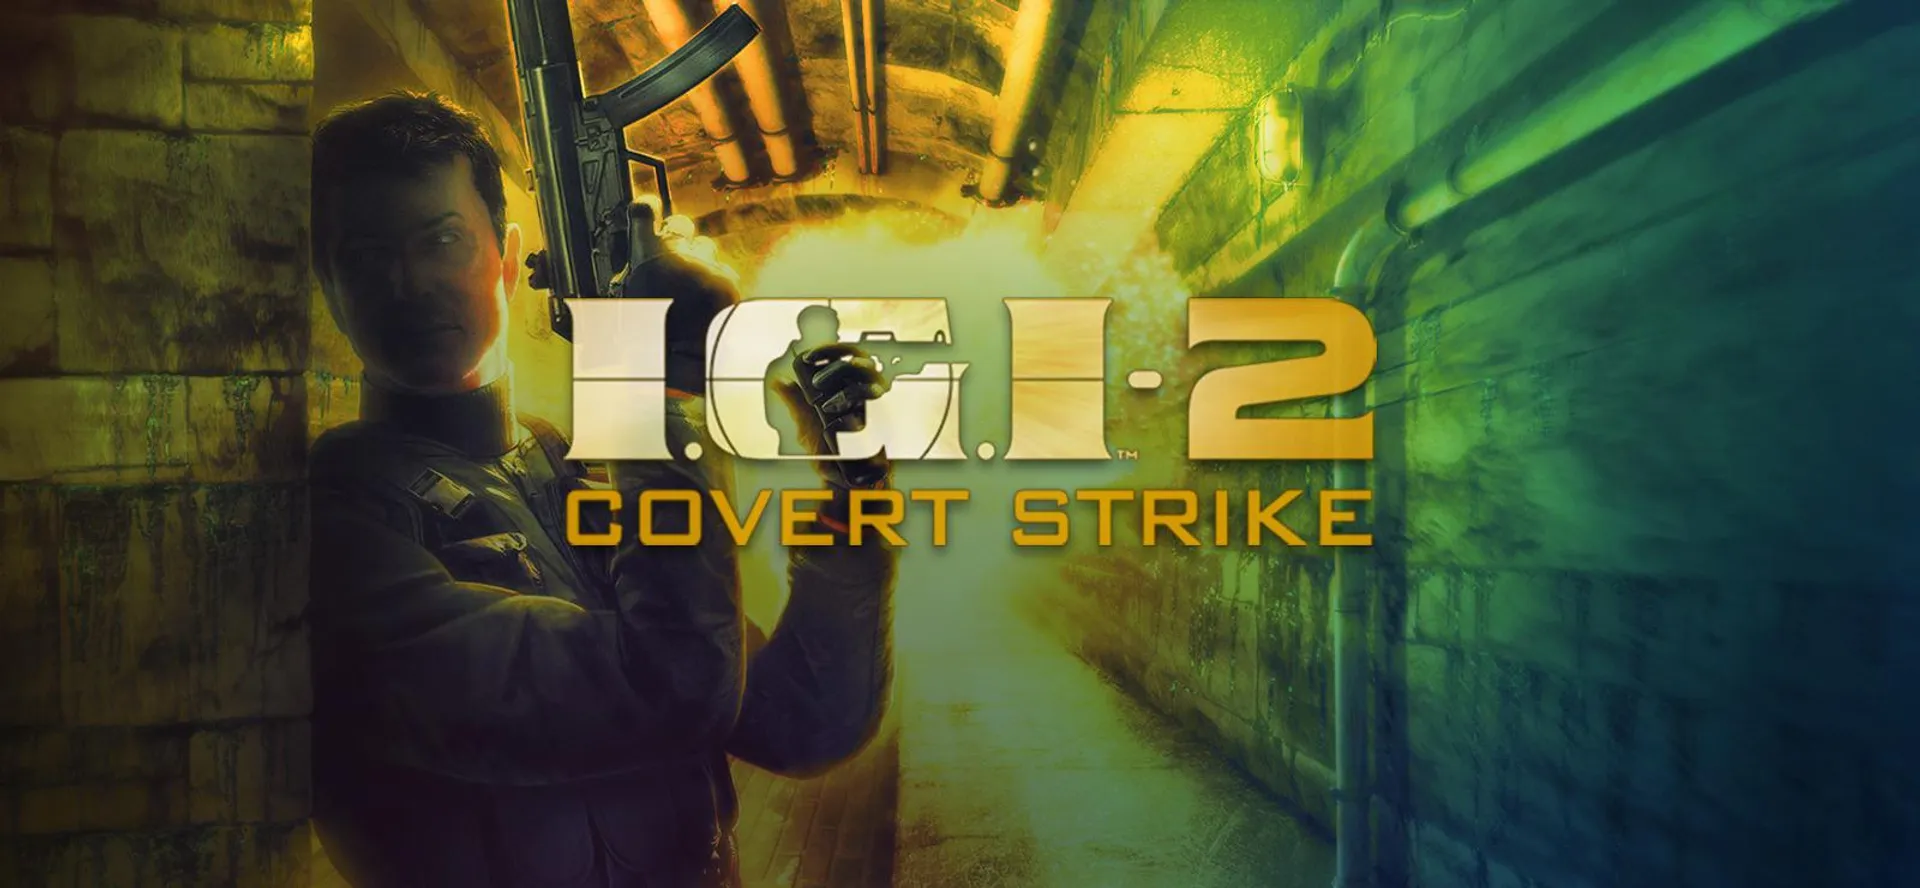 I.G.I. 2: Covert Strike